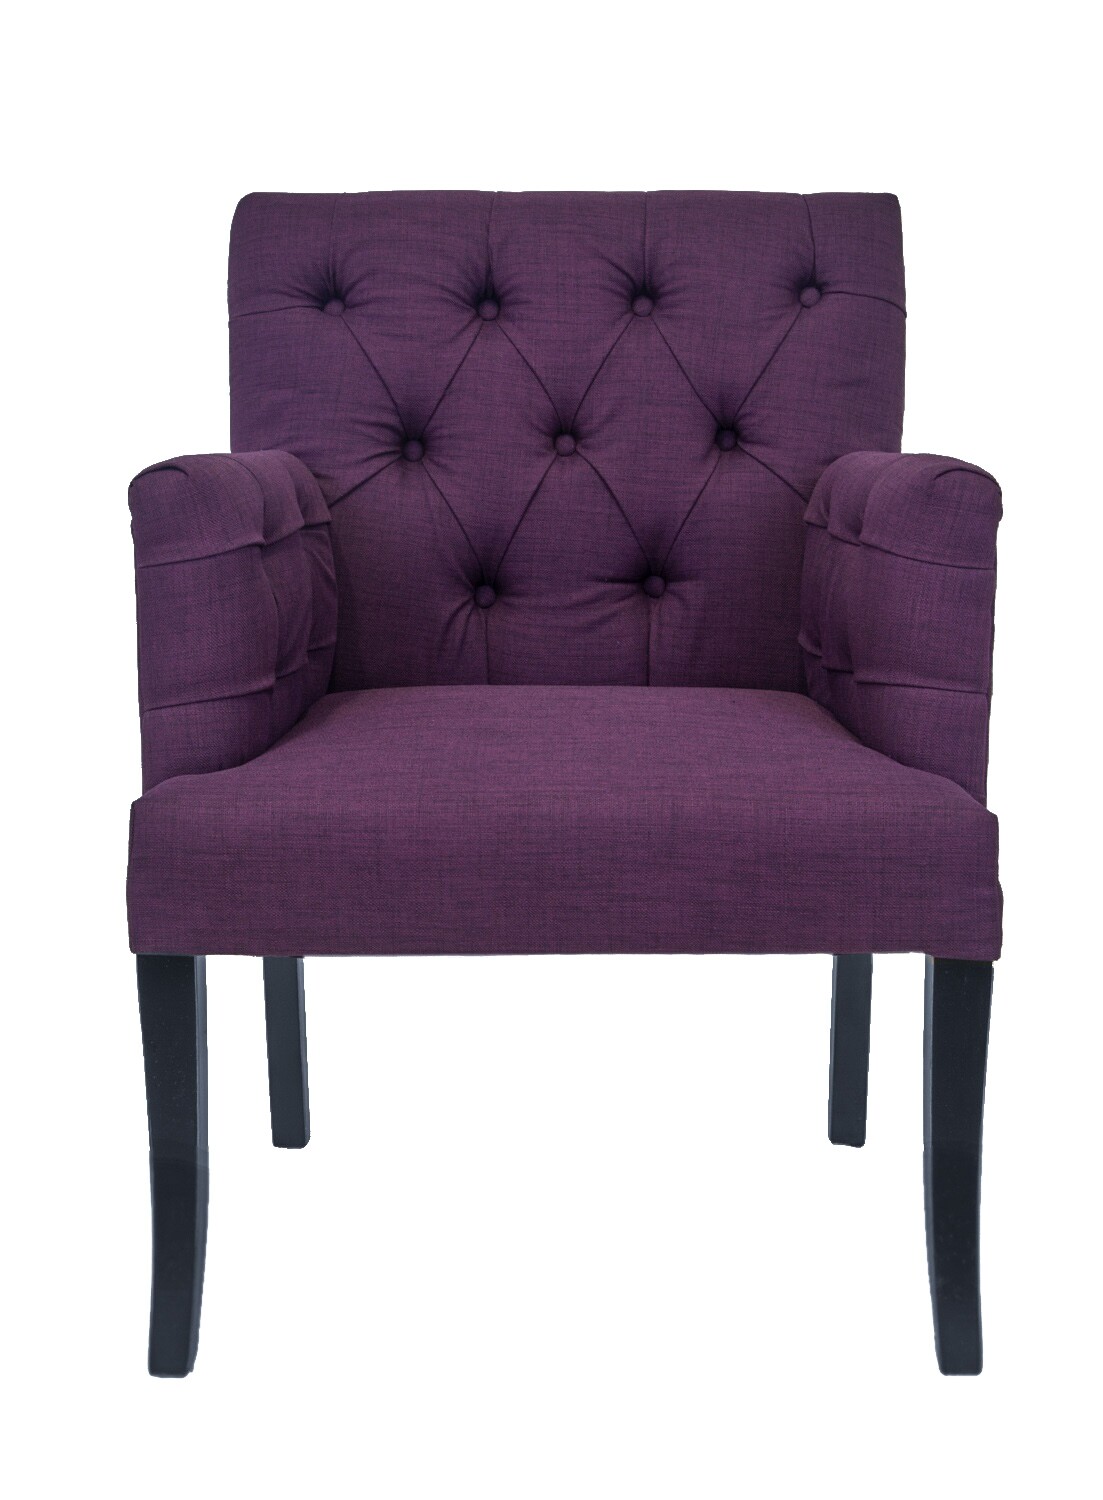 Кресло с мягкими подлокотниками фиолетовое Zander purple